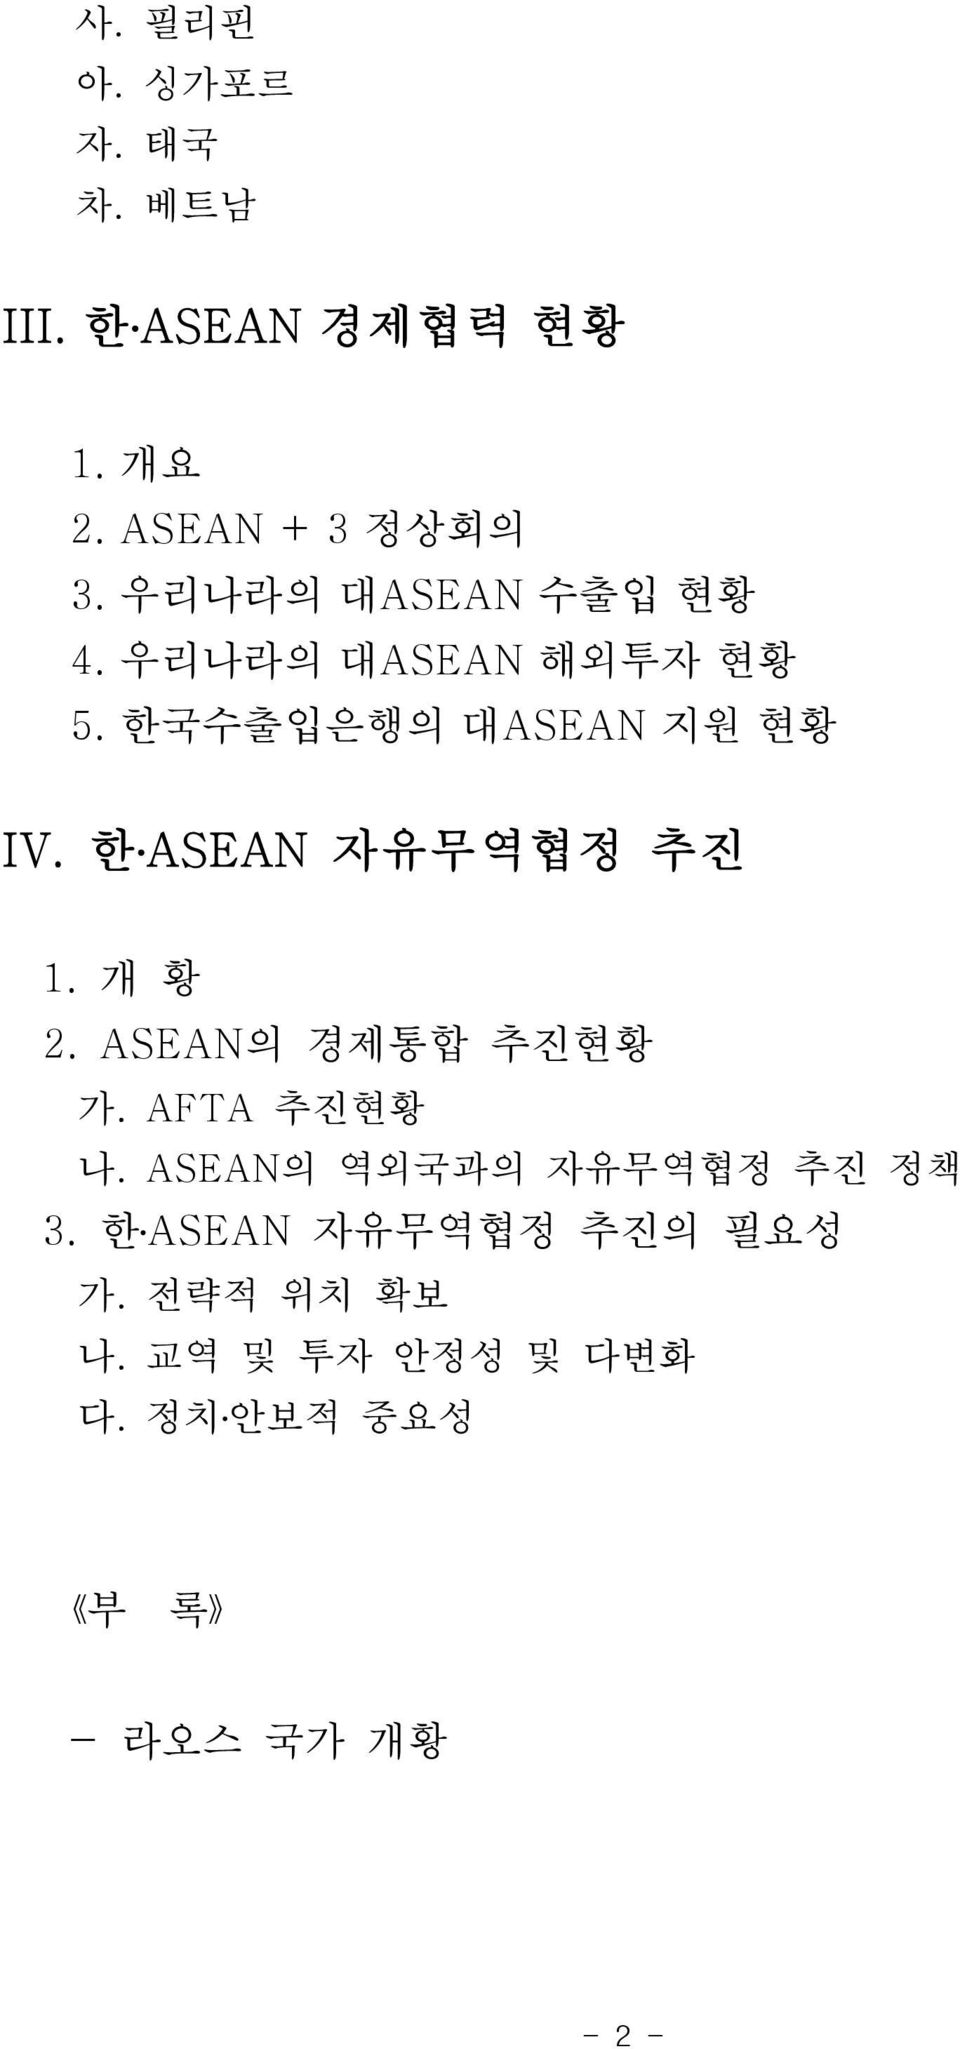 ASEAN 5. ASEAN IV. ASEAN 1.